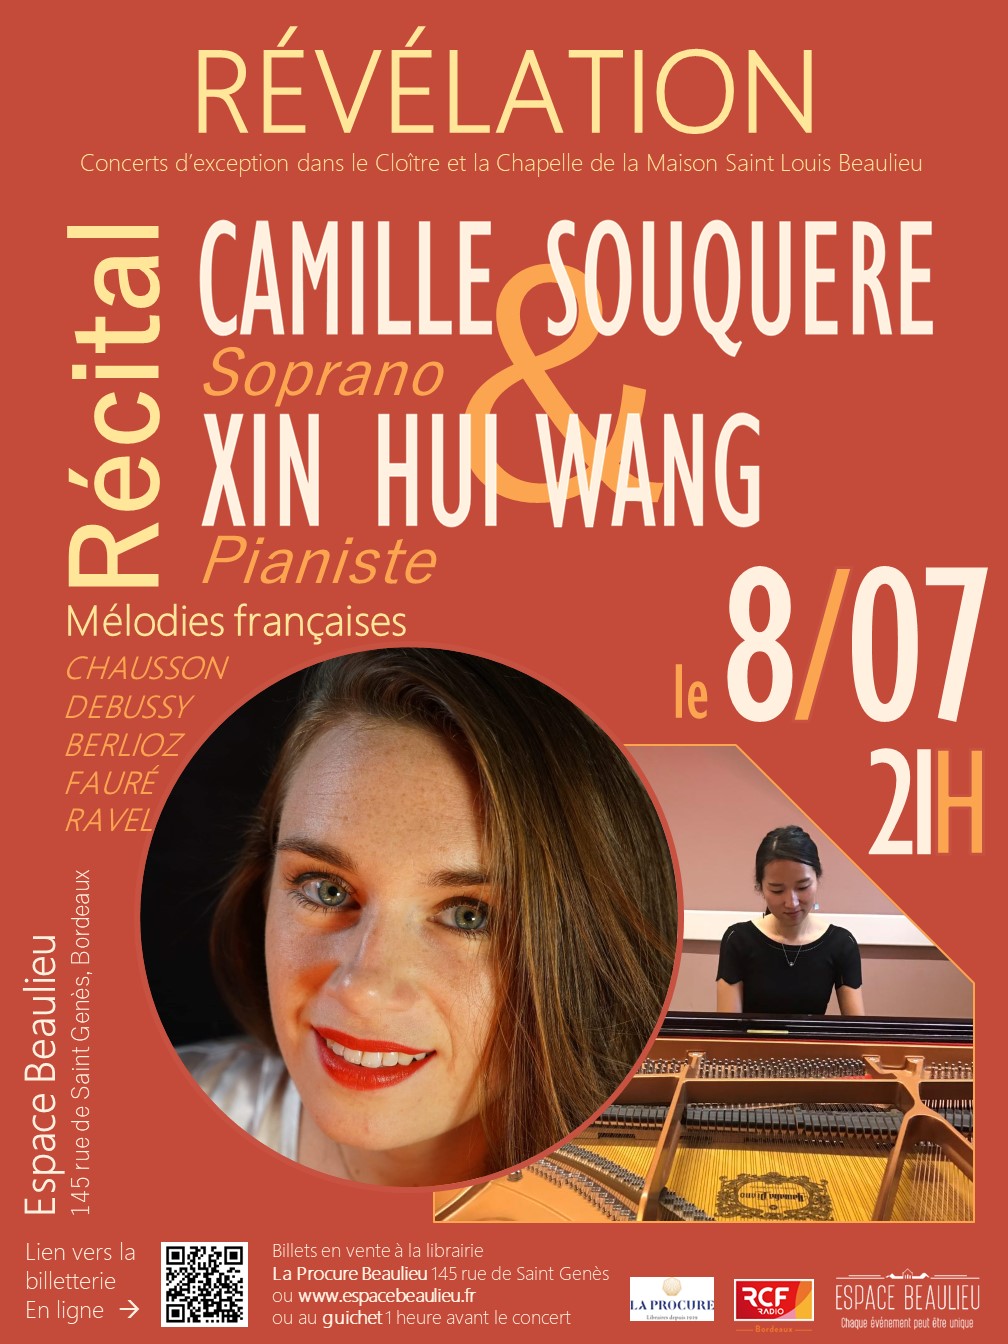 Concert RÉVÉLATION : récital piano et voix, Camille Souquère (soprano) et Xin Hui Wang (pianiste)